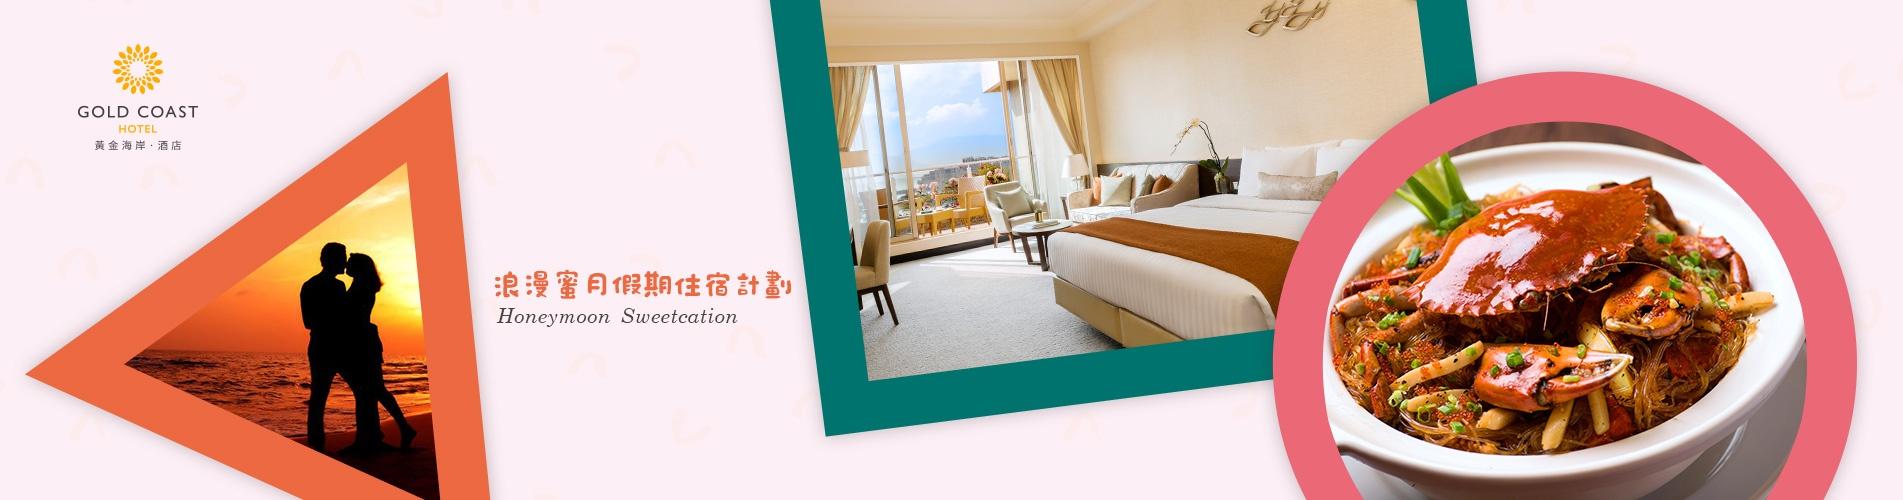 香港黃金海岸酒店「浪漫蜜月假期」住宿計劃